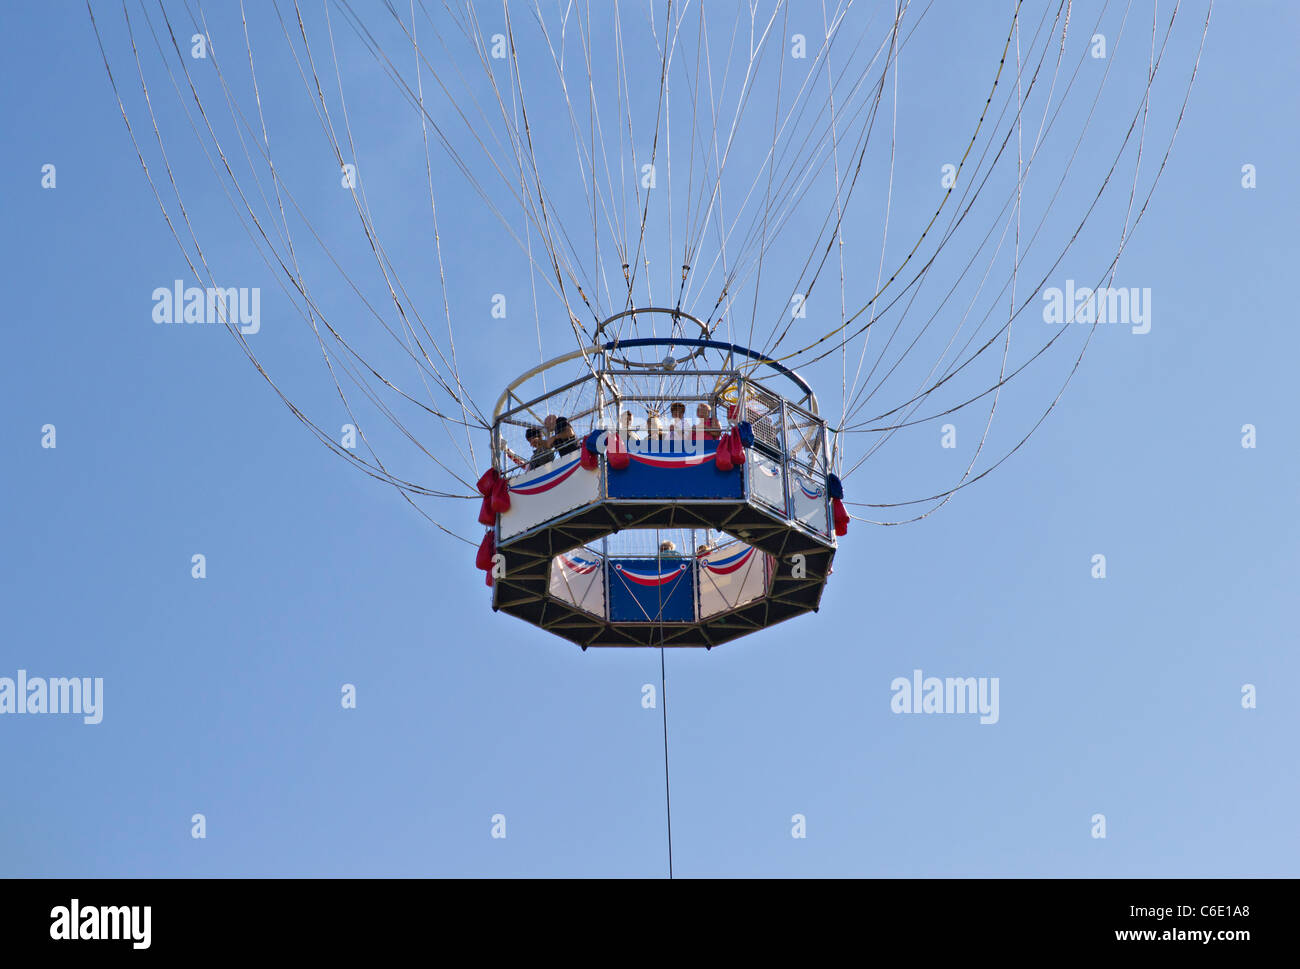 Helium Ballon-Korb Beobachtung Gondel - kein Ballon sichtbar, nur Menschen, die durch viele Drähte und eine Leine Seil aufgehängt Stockfoto